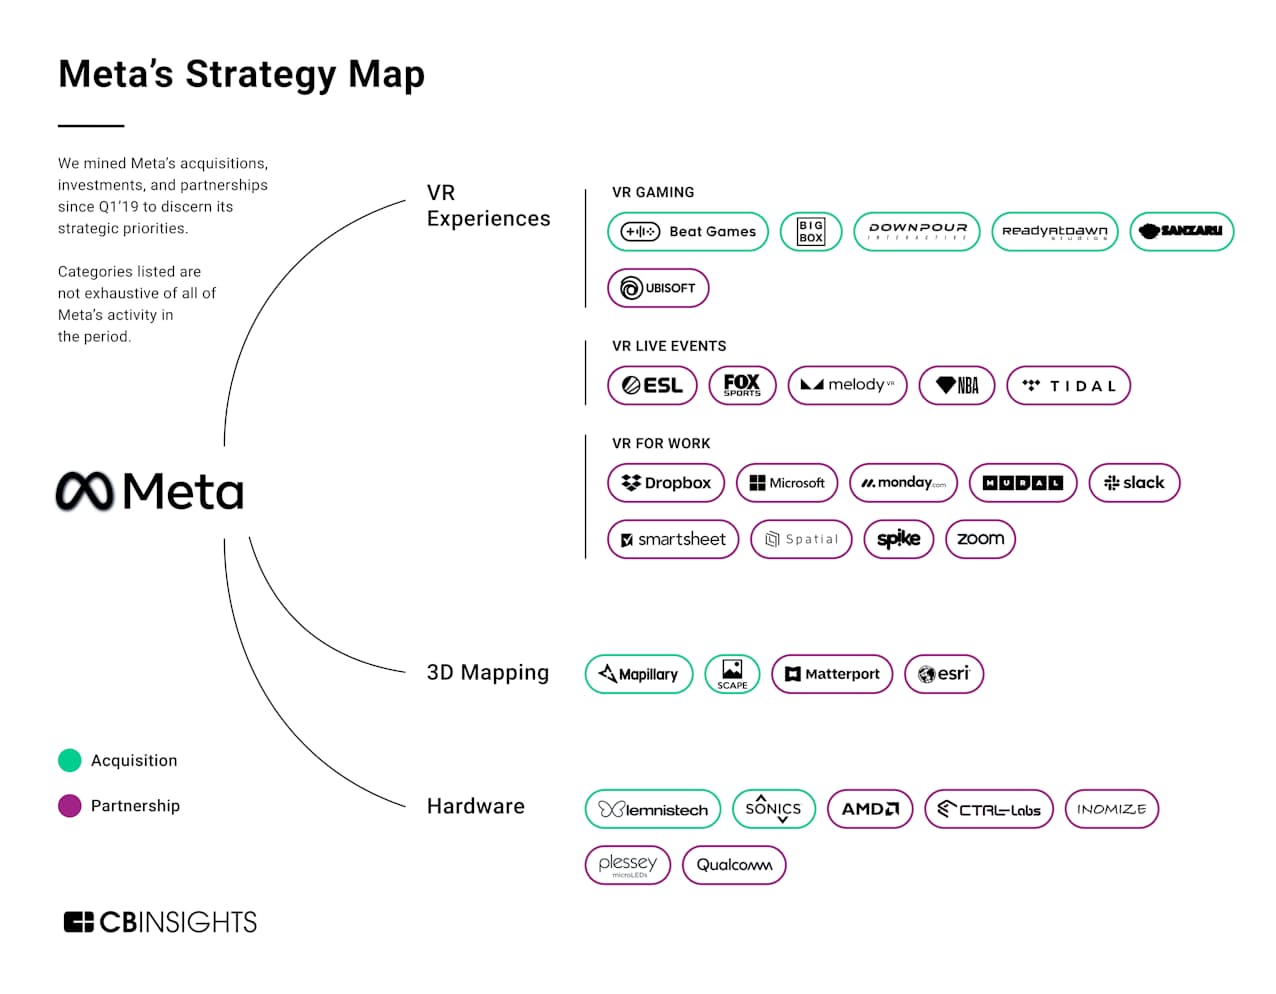 メタの戦略マップ――2019年第1四半期以降のメタ社の買収、投資、提携を分析し、その戦略的な優先順位を明らかにした
（この図は分析対象期間のメタの出資や提携活動を網羅してはいない）